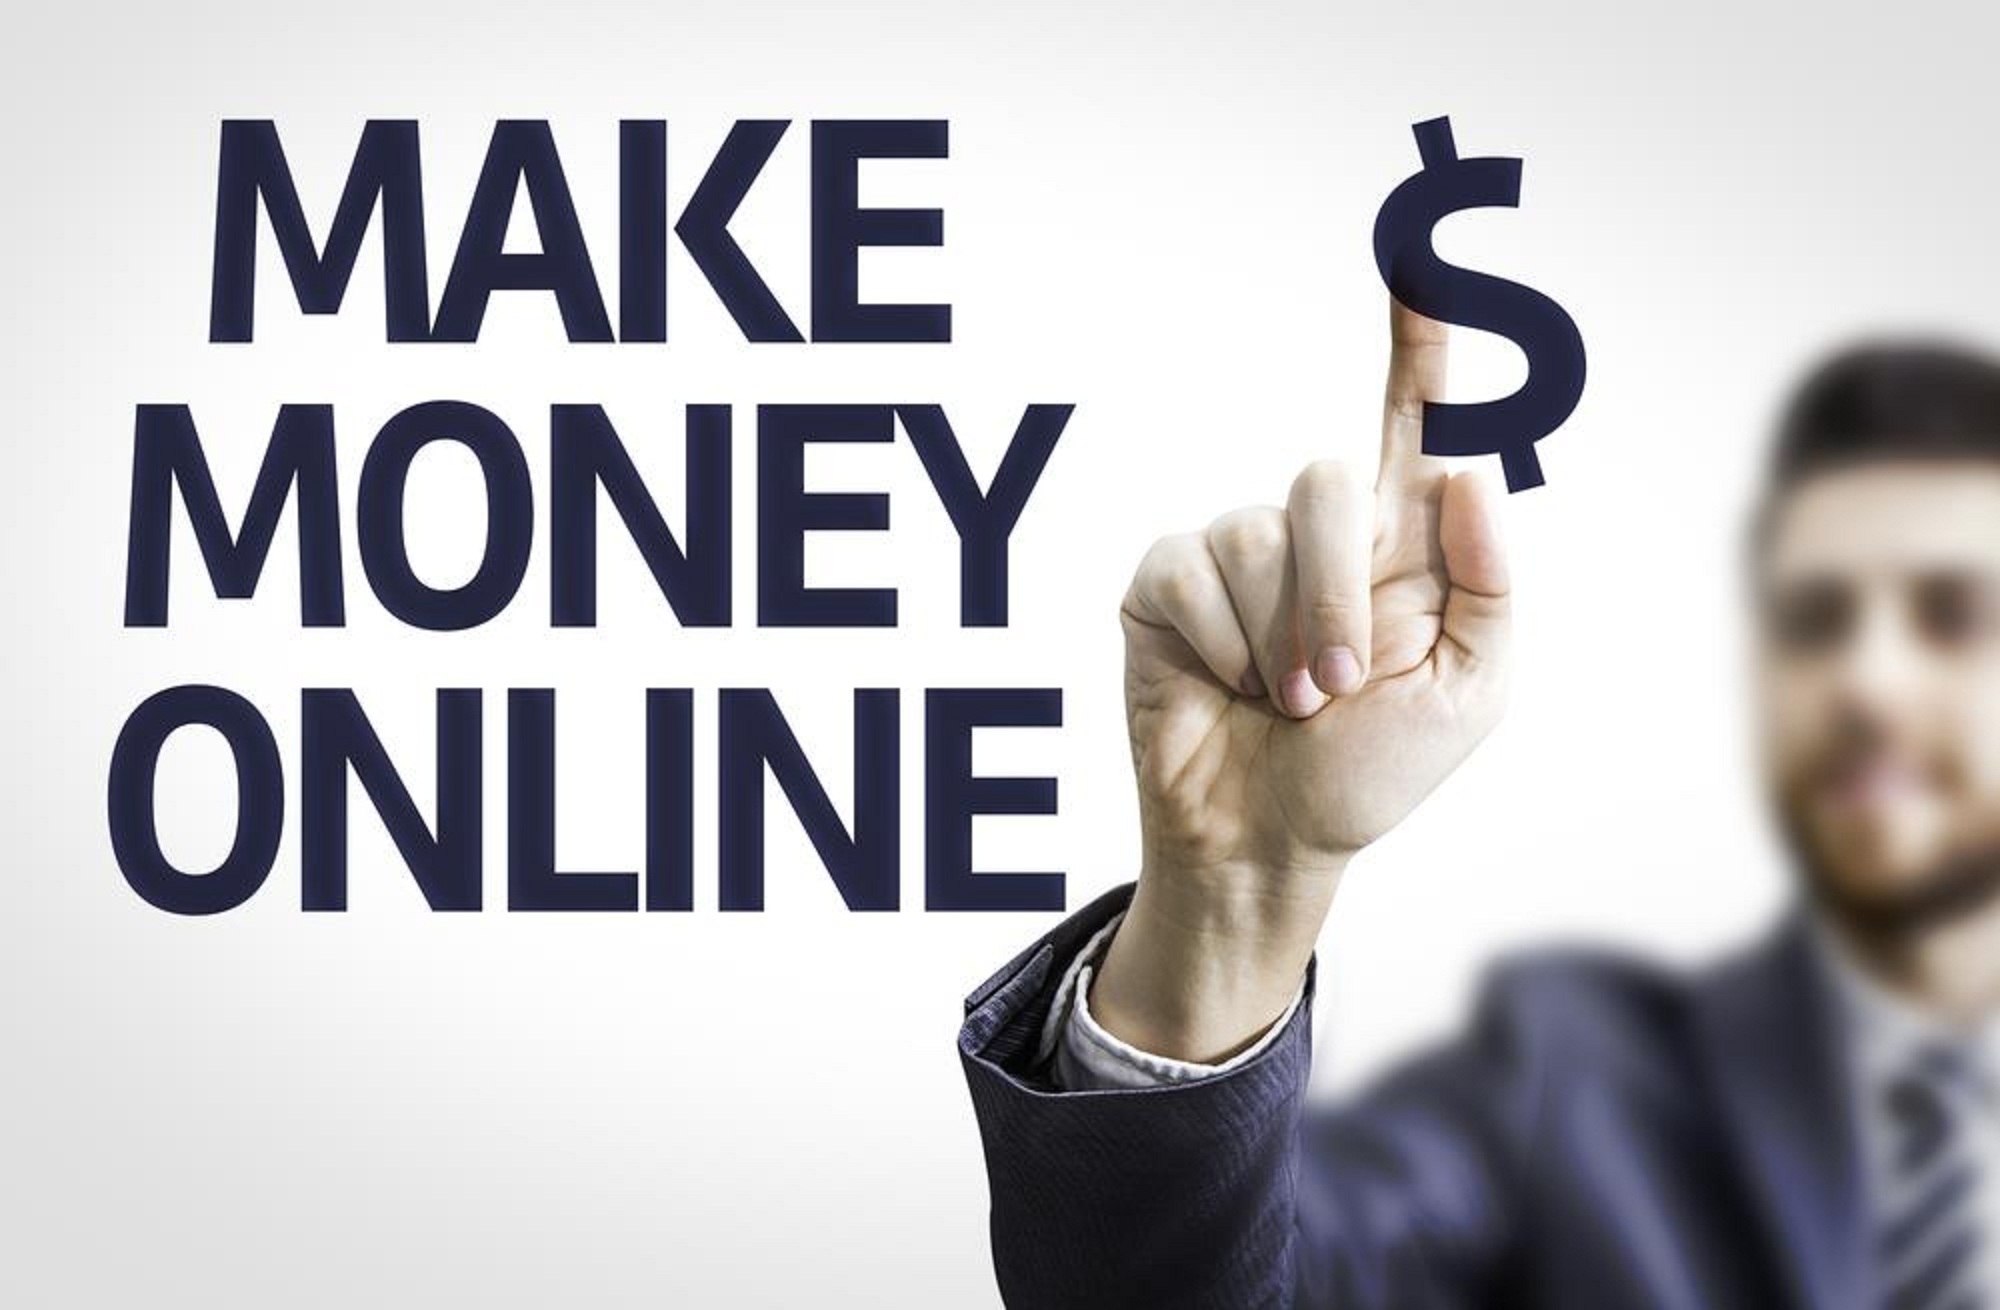 Make Money Online – The Basics On How To Start Making Money Online